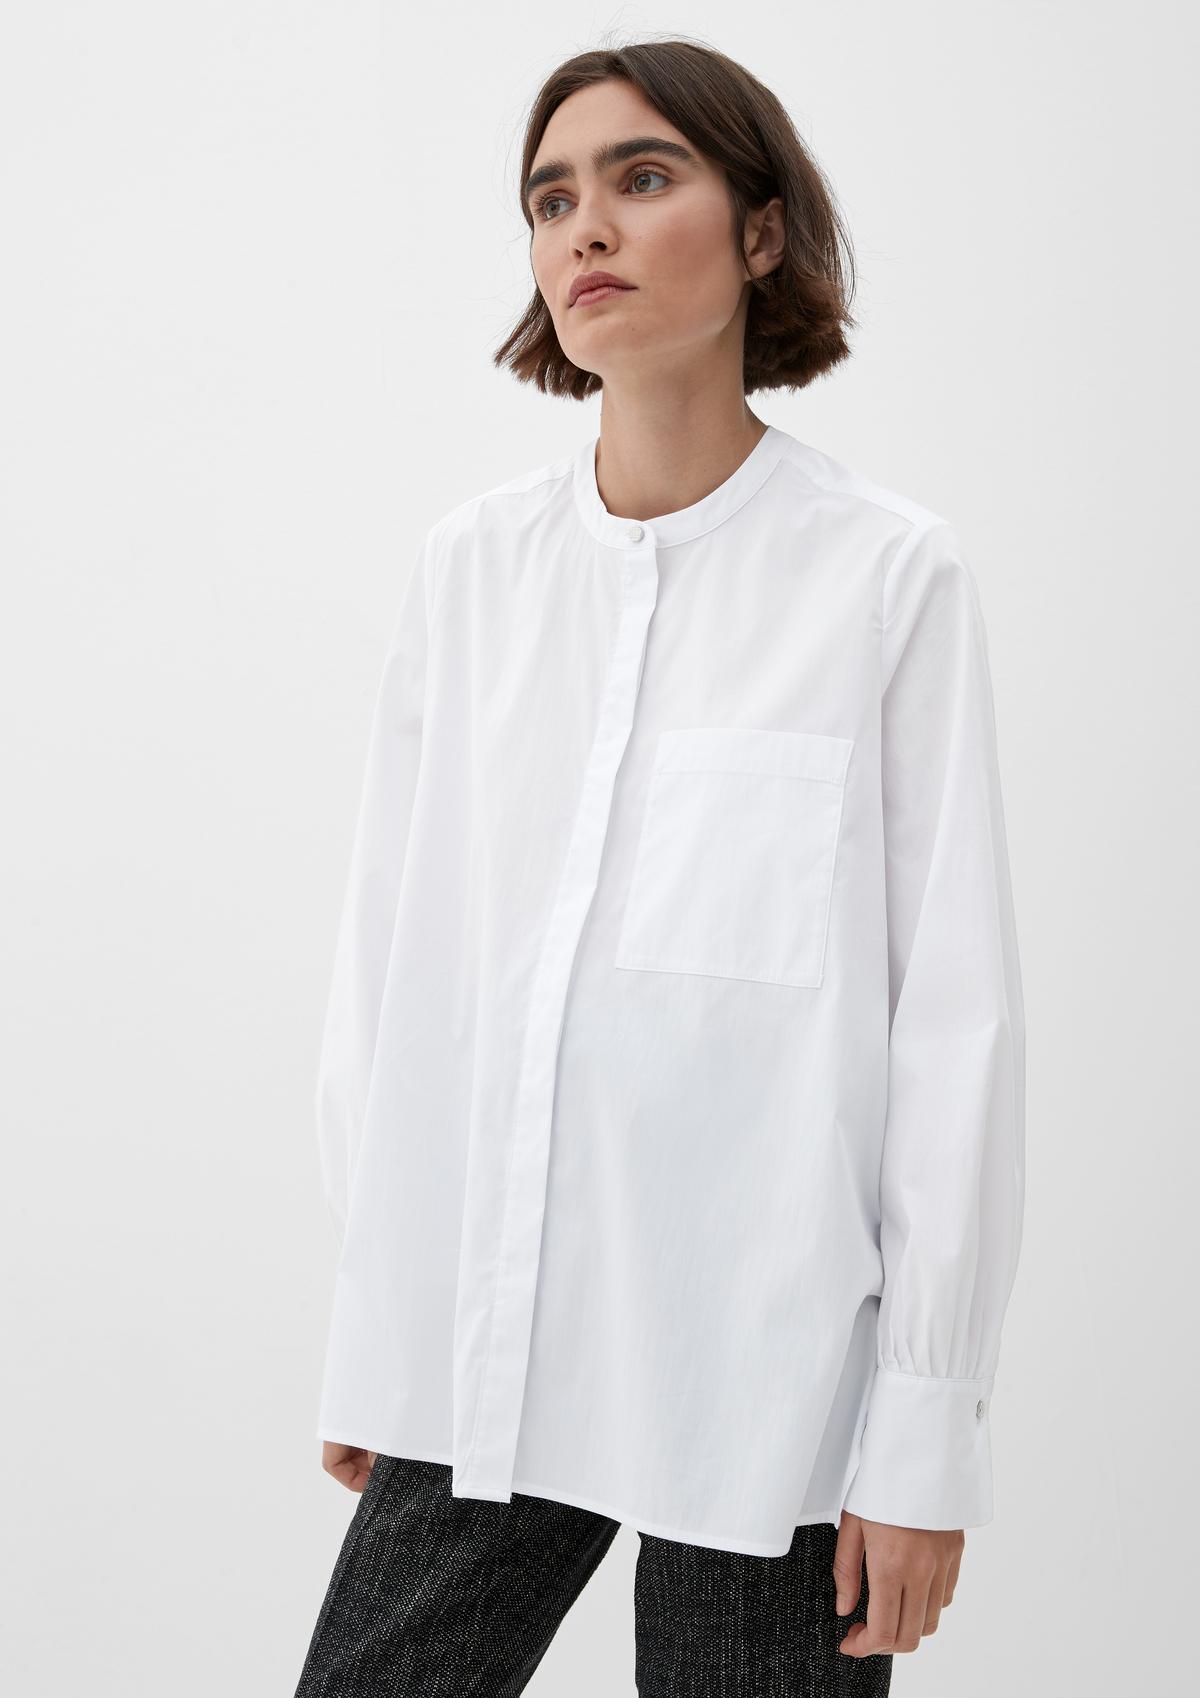 Bluse aus Baumwollstretch - weiß